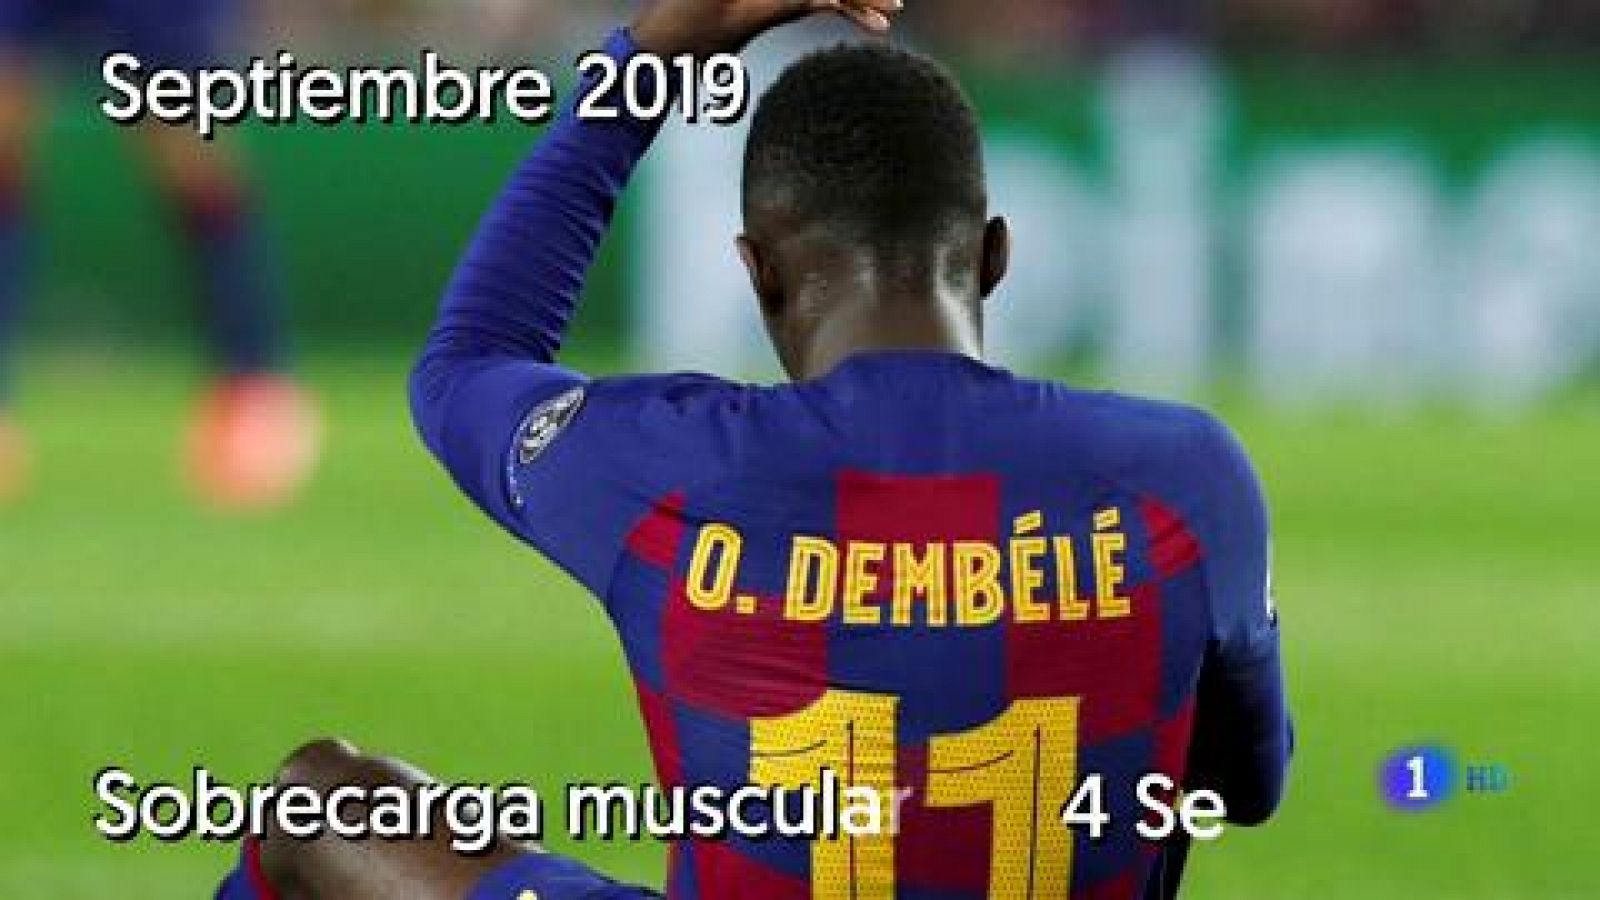 El delantero del FC Barcelona Ousmane Dembélé tiene para 10  semanas de baja después de la lesión que sufrió el miércoles en Liga  de Campeones contra el Borussia Dortmund, y que confirmó el club este  viernes como "una lesión muscular en el bíceps f